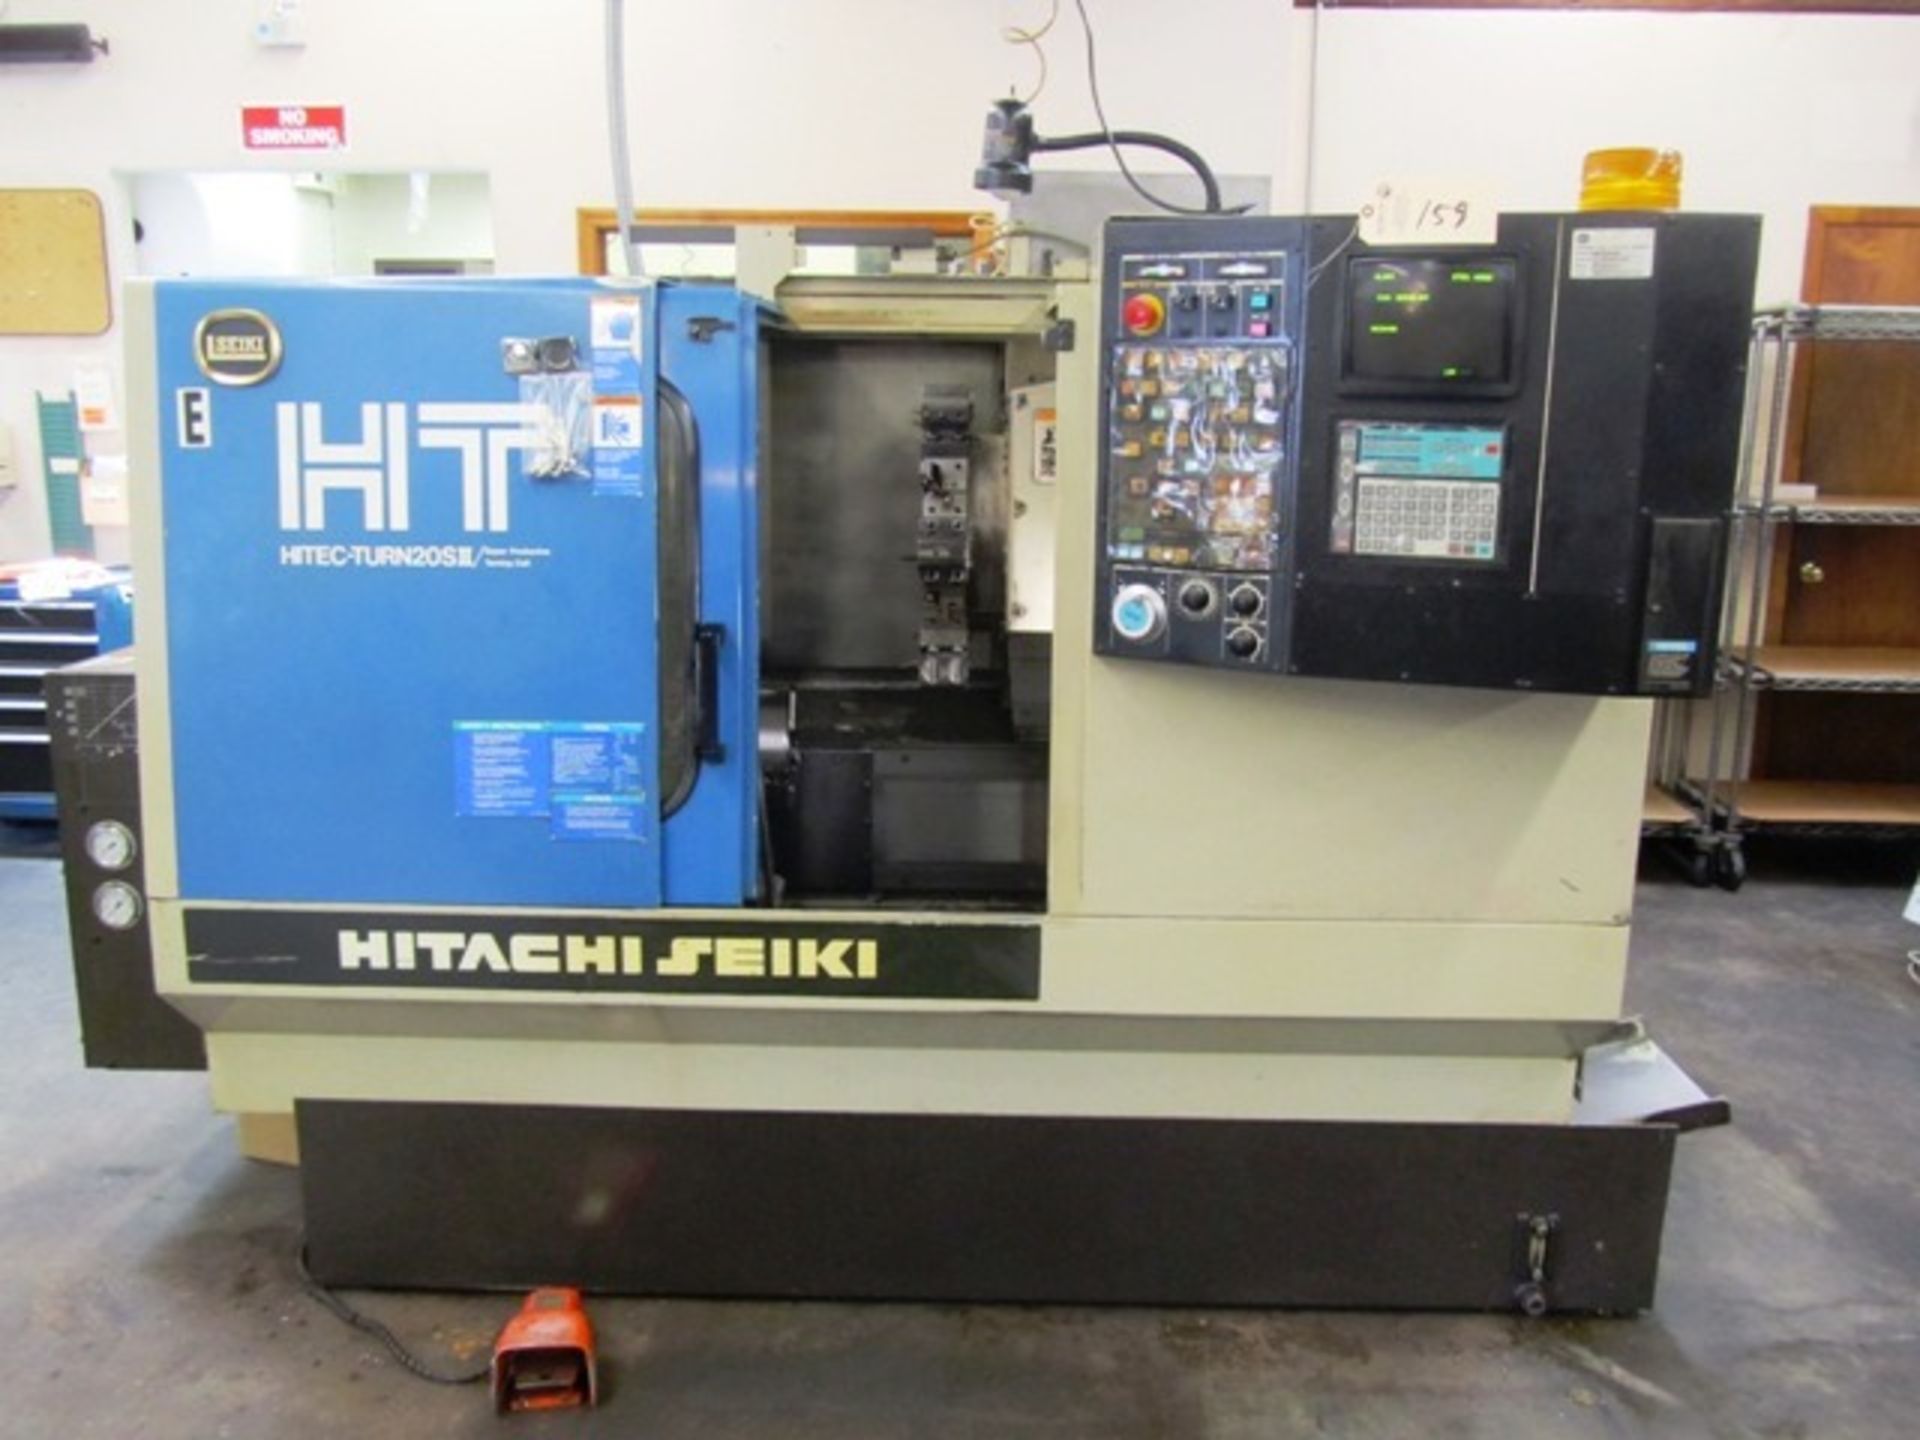 Hitachi Seiki HiTec-Turn 20SII CNC Lathe